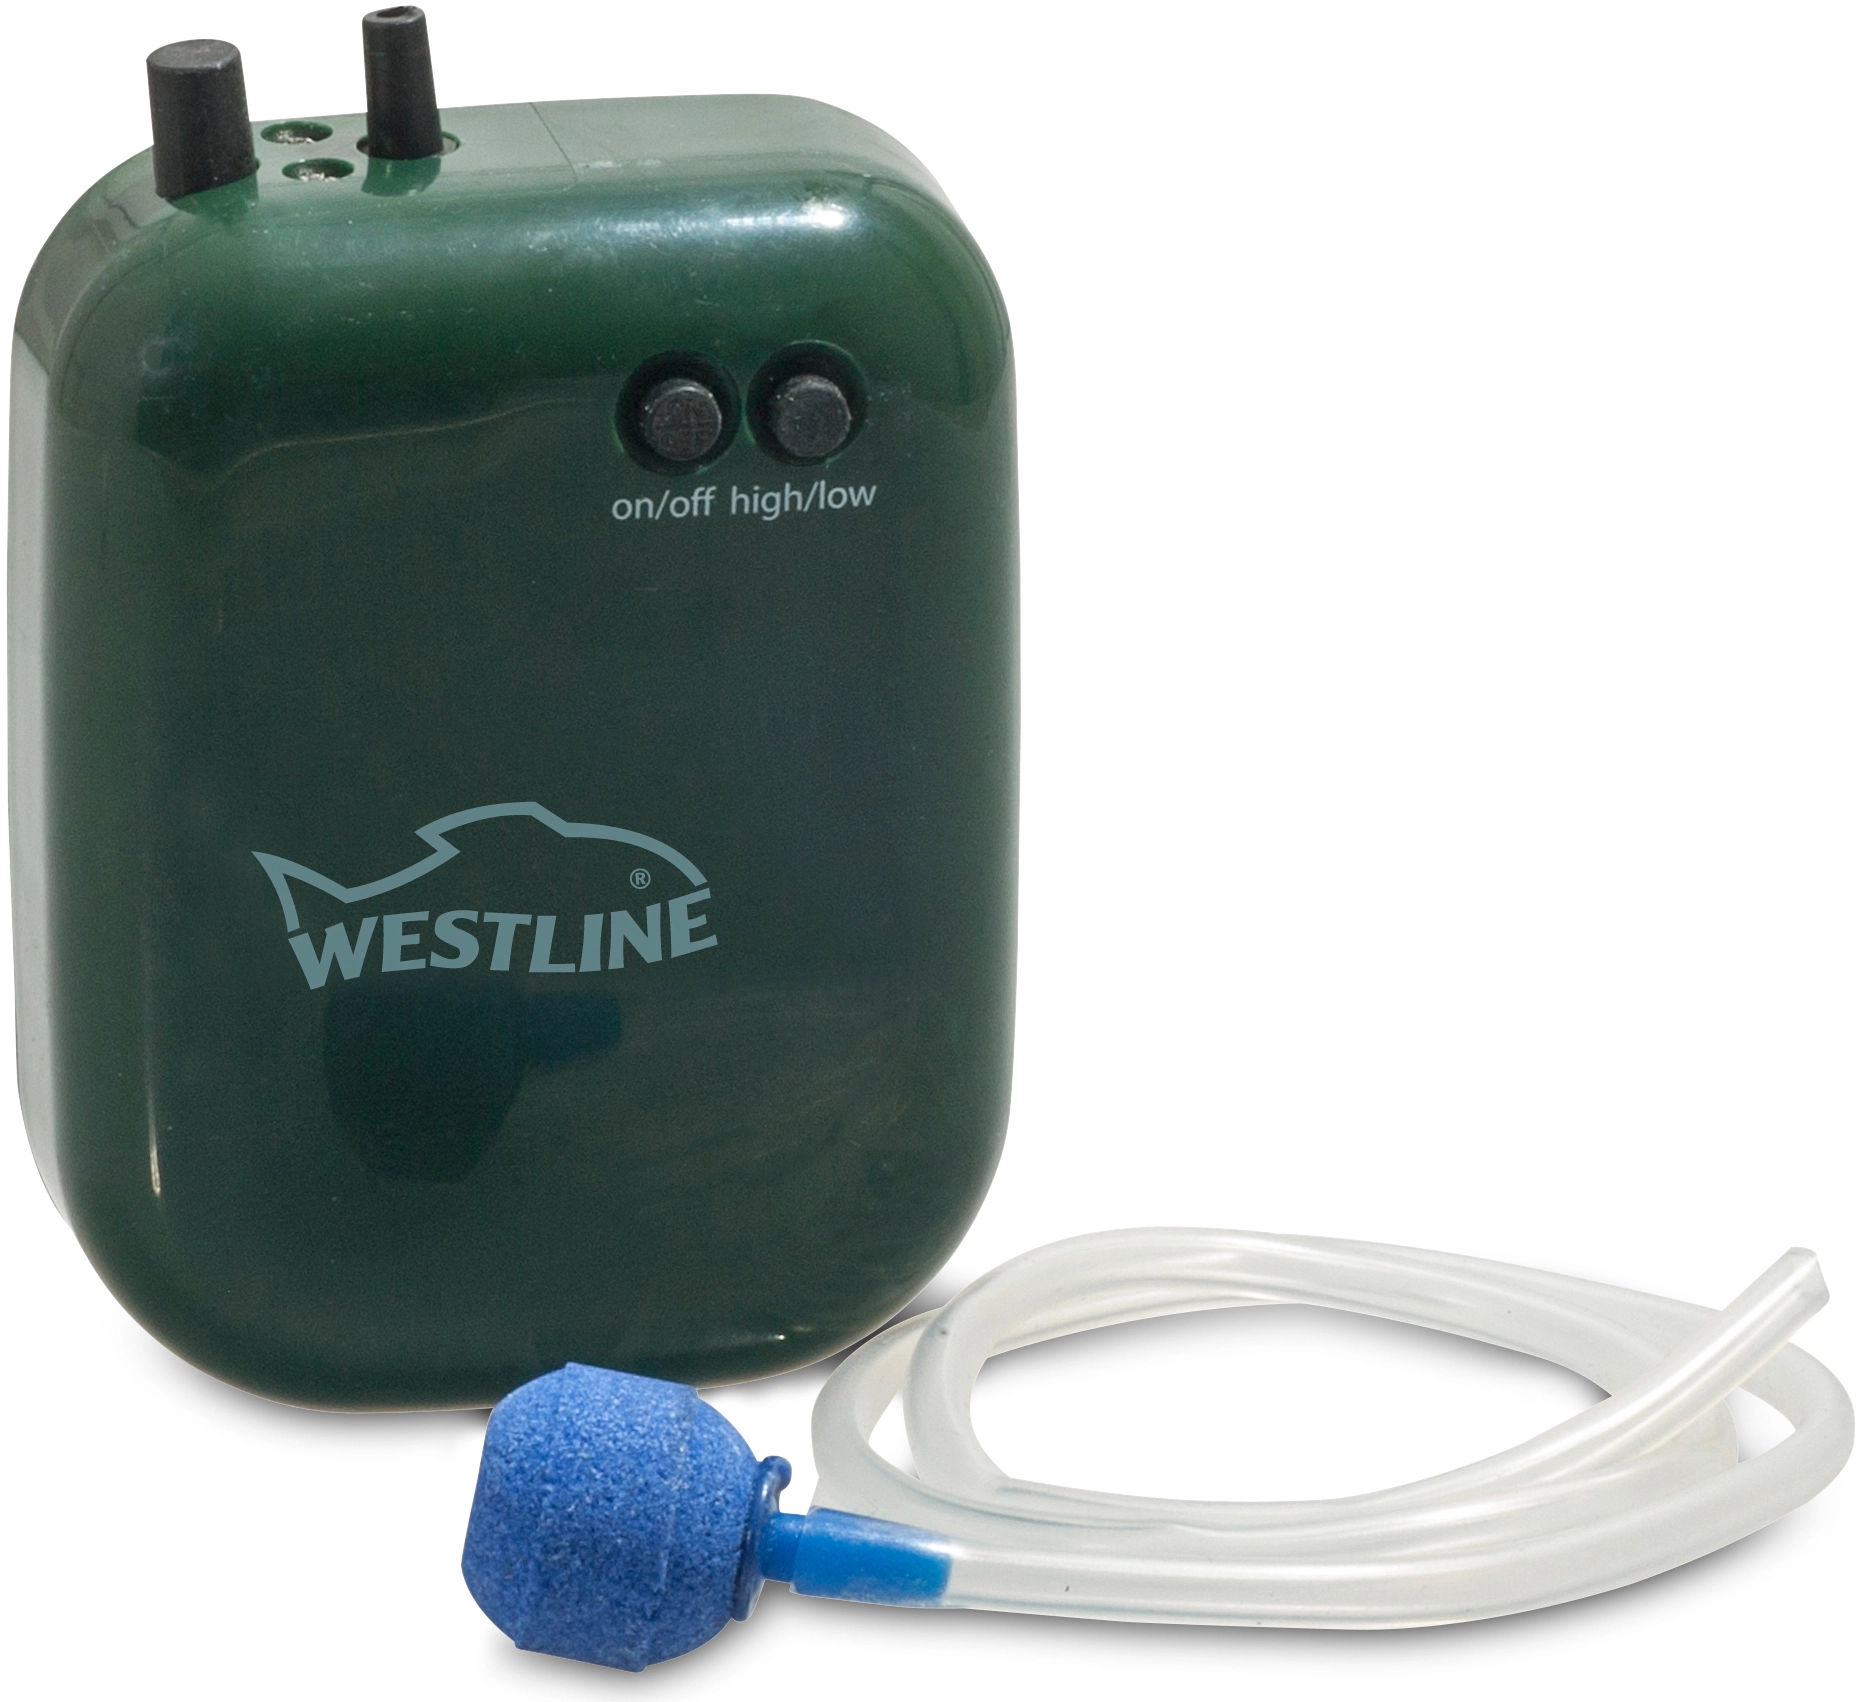 Westline Sauerstoffpumpe 2 Gang kaufen bei OBI